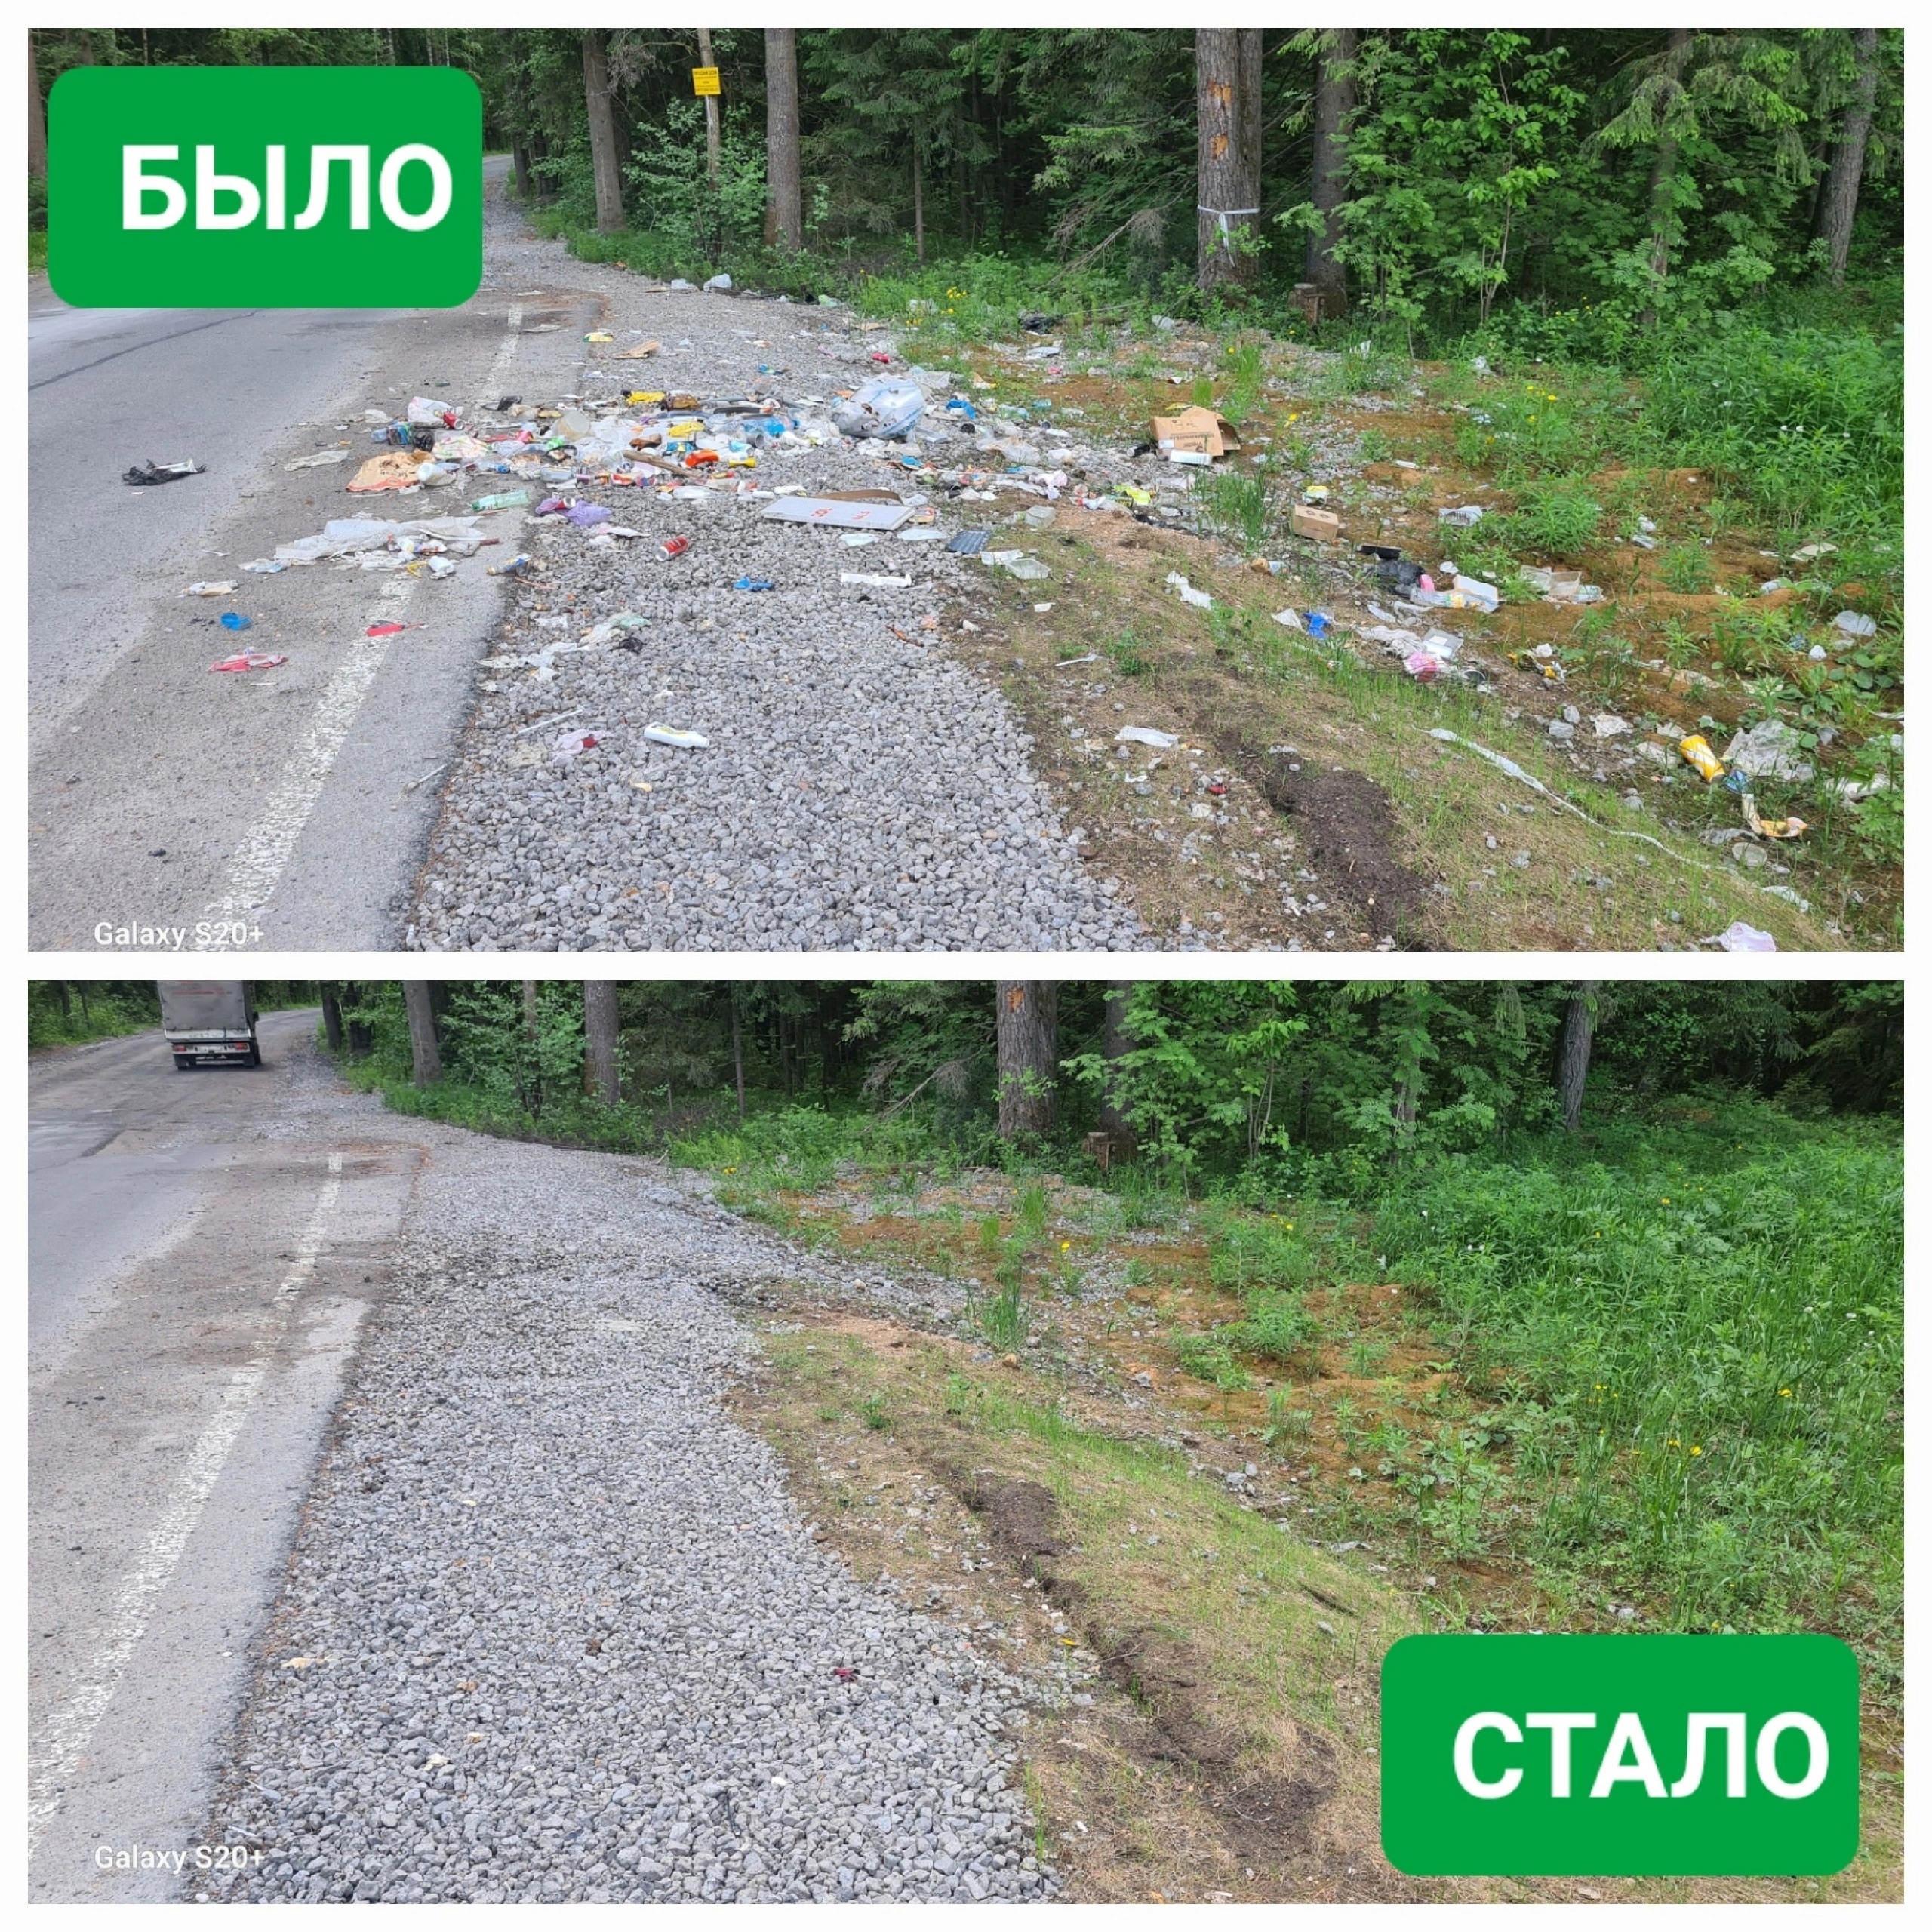 Сообщить о навалах мусора в Череповецком районе можно через чат Отдела экологического контроля. Подписывайтесь!👇.